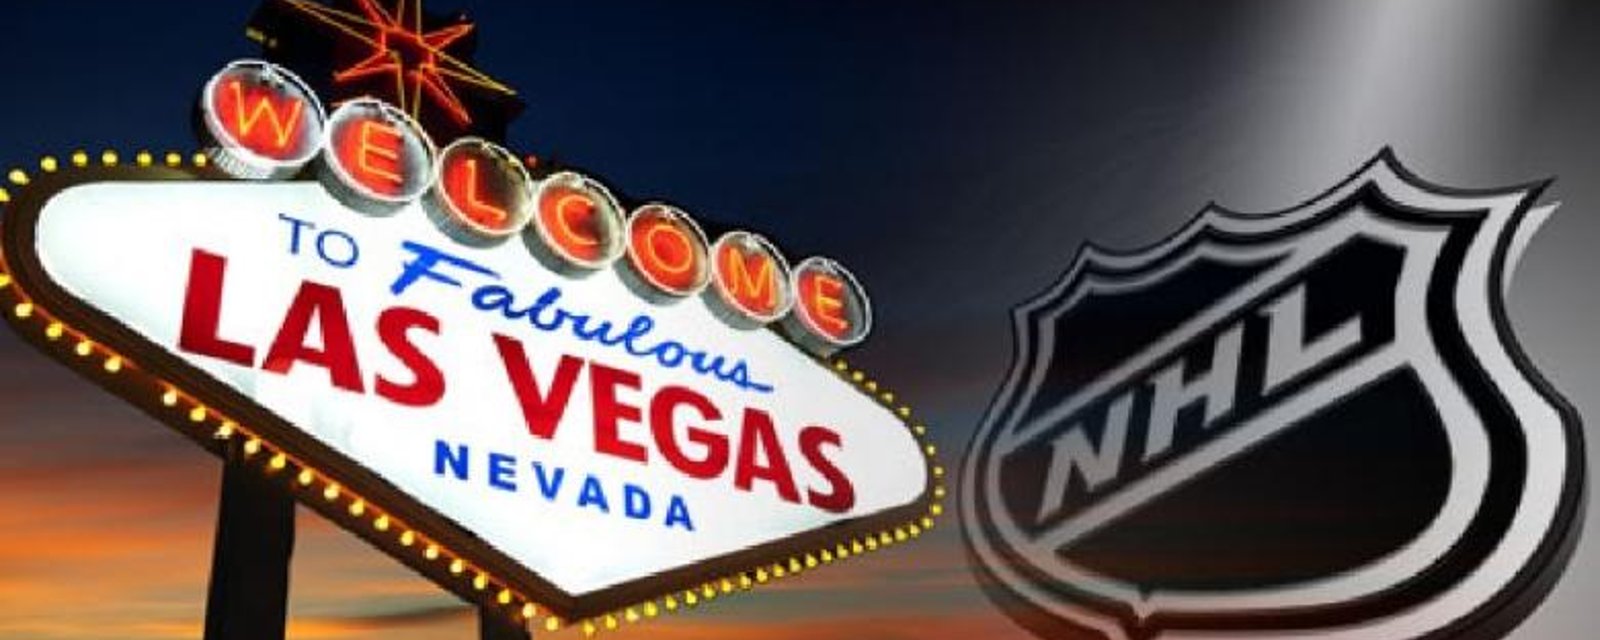 Quatre suggestions de nom et logo pour la nouvelle équipe de Las Vegas!